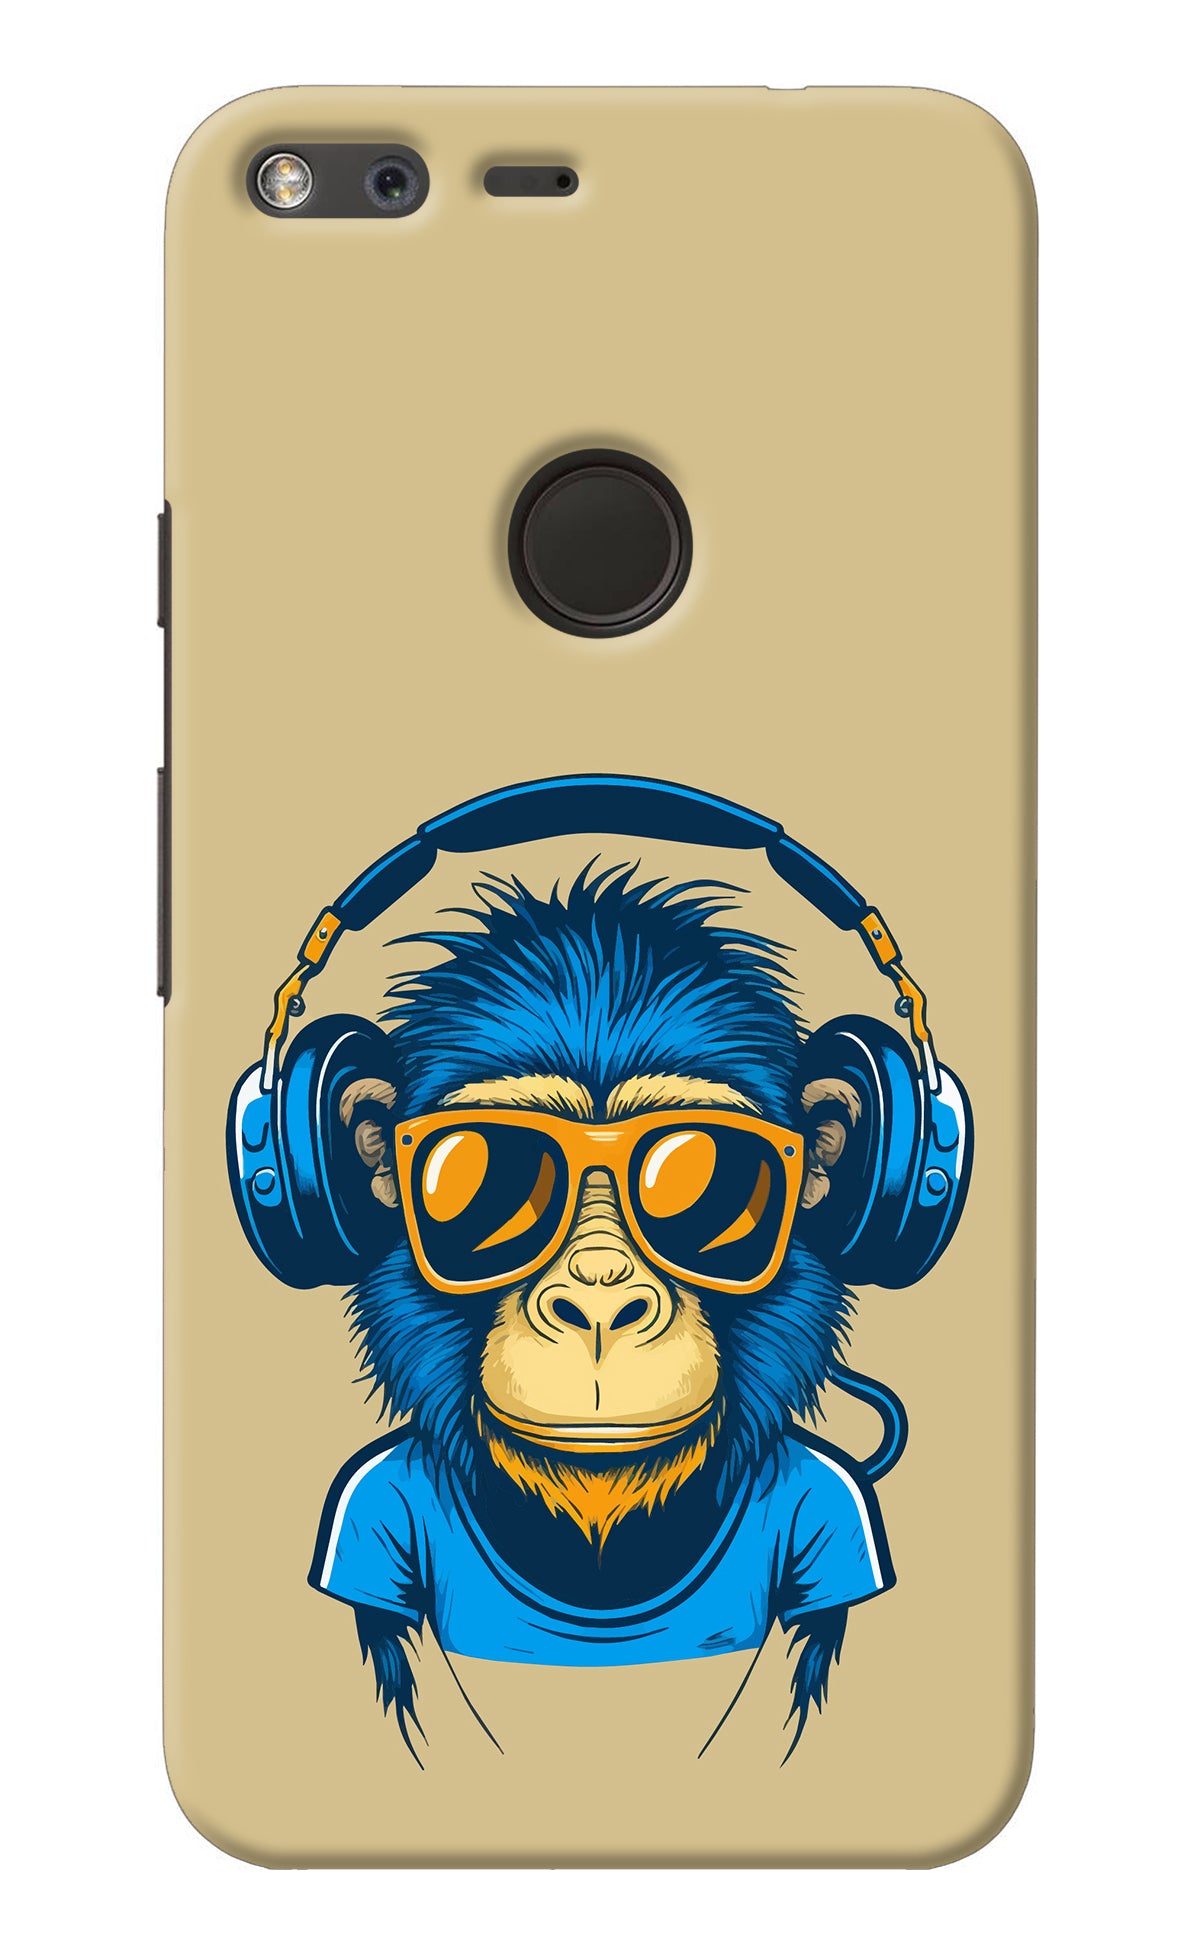 Monkey Headphone Google Pixel XL Back Cover